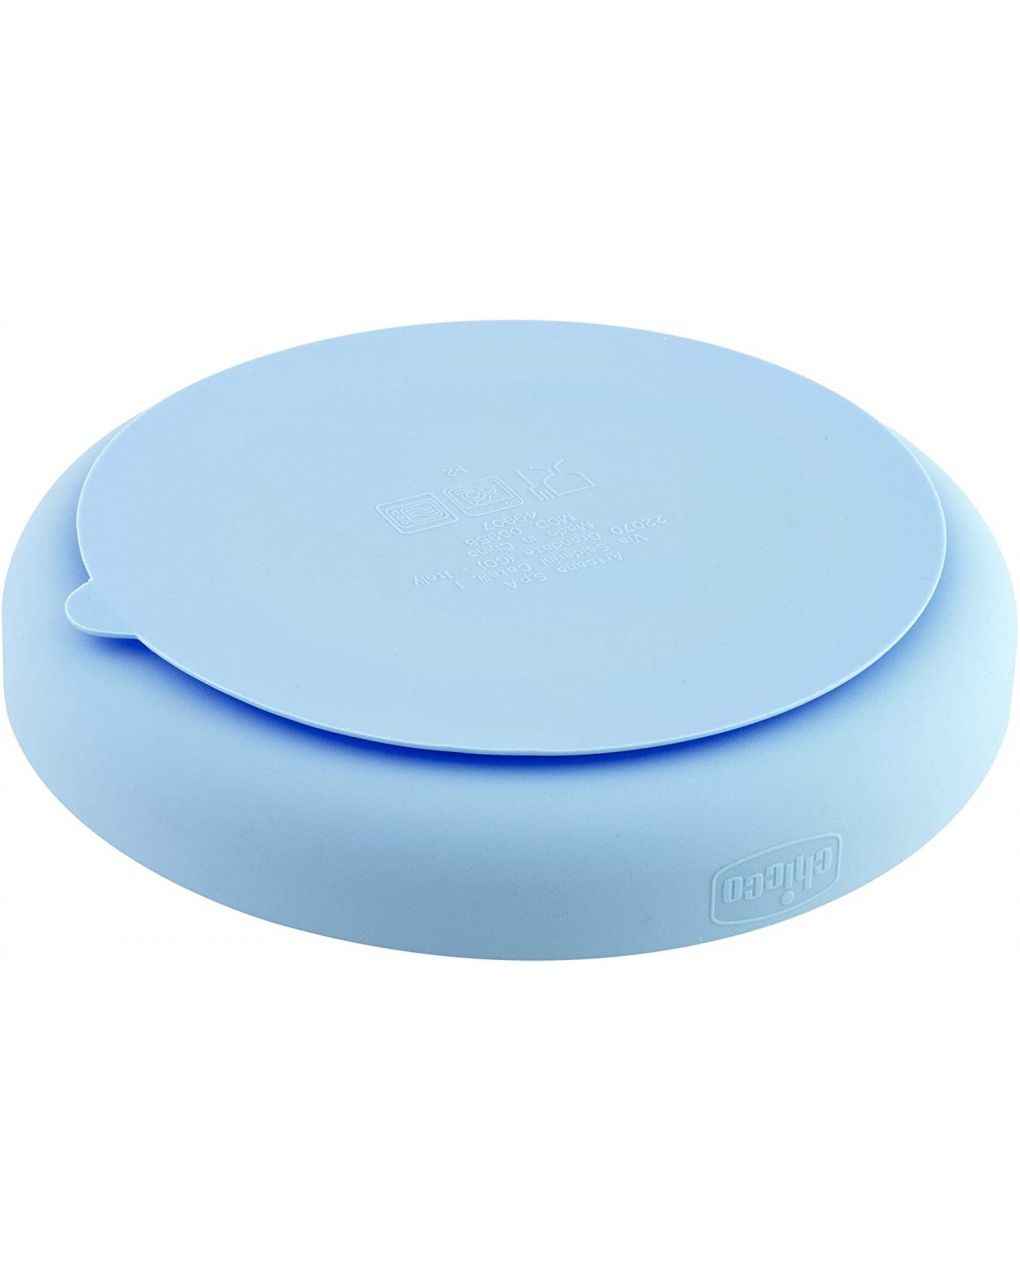 Placa de silicone com compartimentos com ventosa 12 meses + azul claro - Chicco